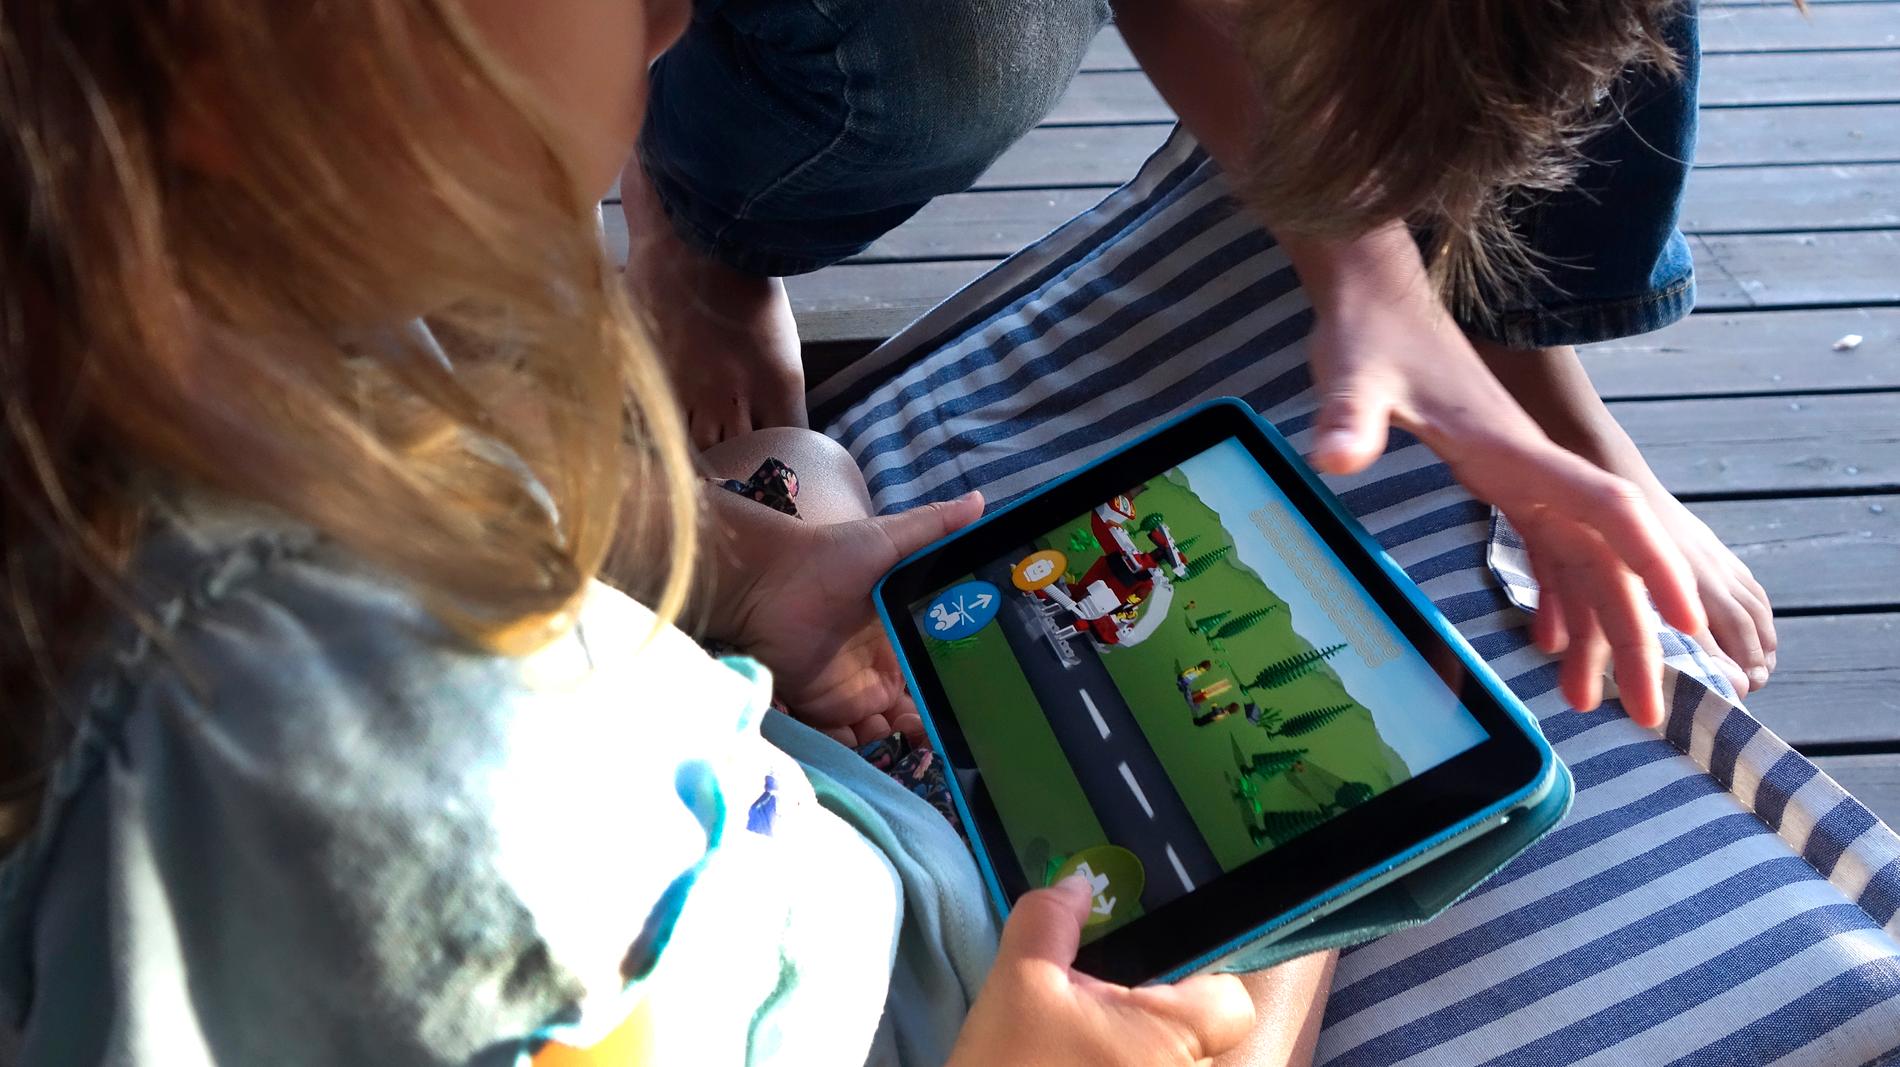 När barn spelar memory digitalt blir det mer individuellt. Barnen tittar inte på varandra utan på skärmen. Då handlar det mer om att utforska hur appen fungerar, säger Malin Nilsen. Arkivbild.